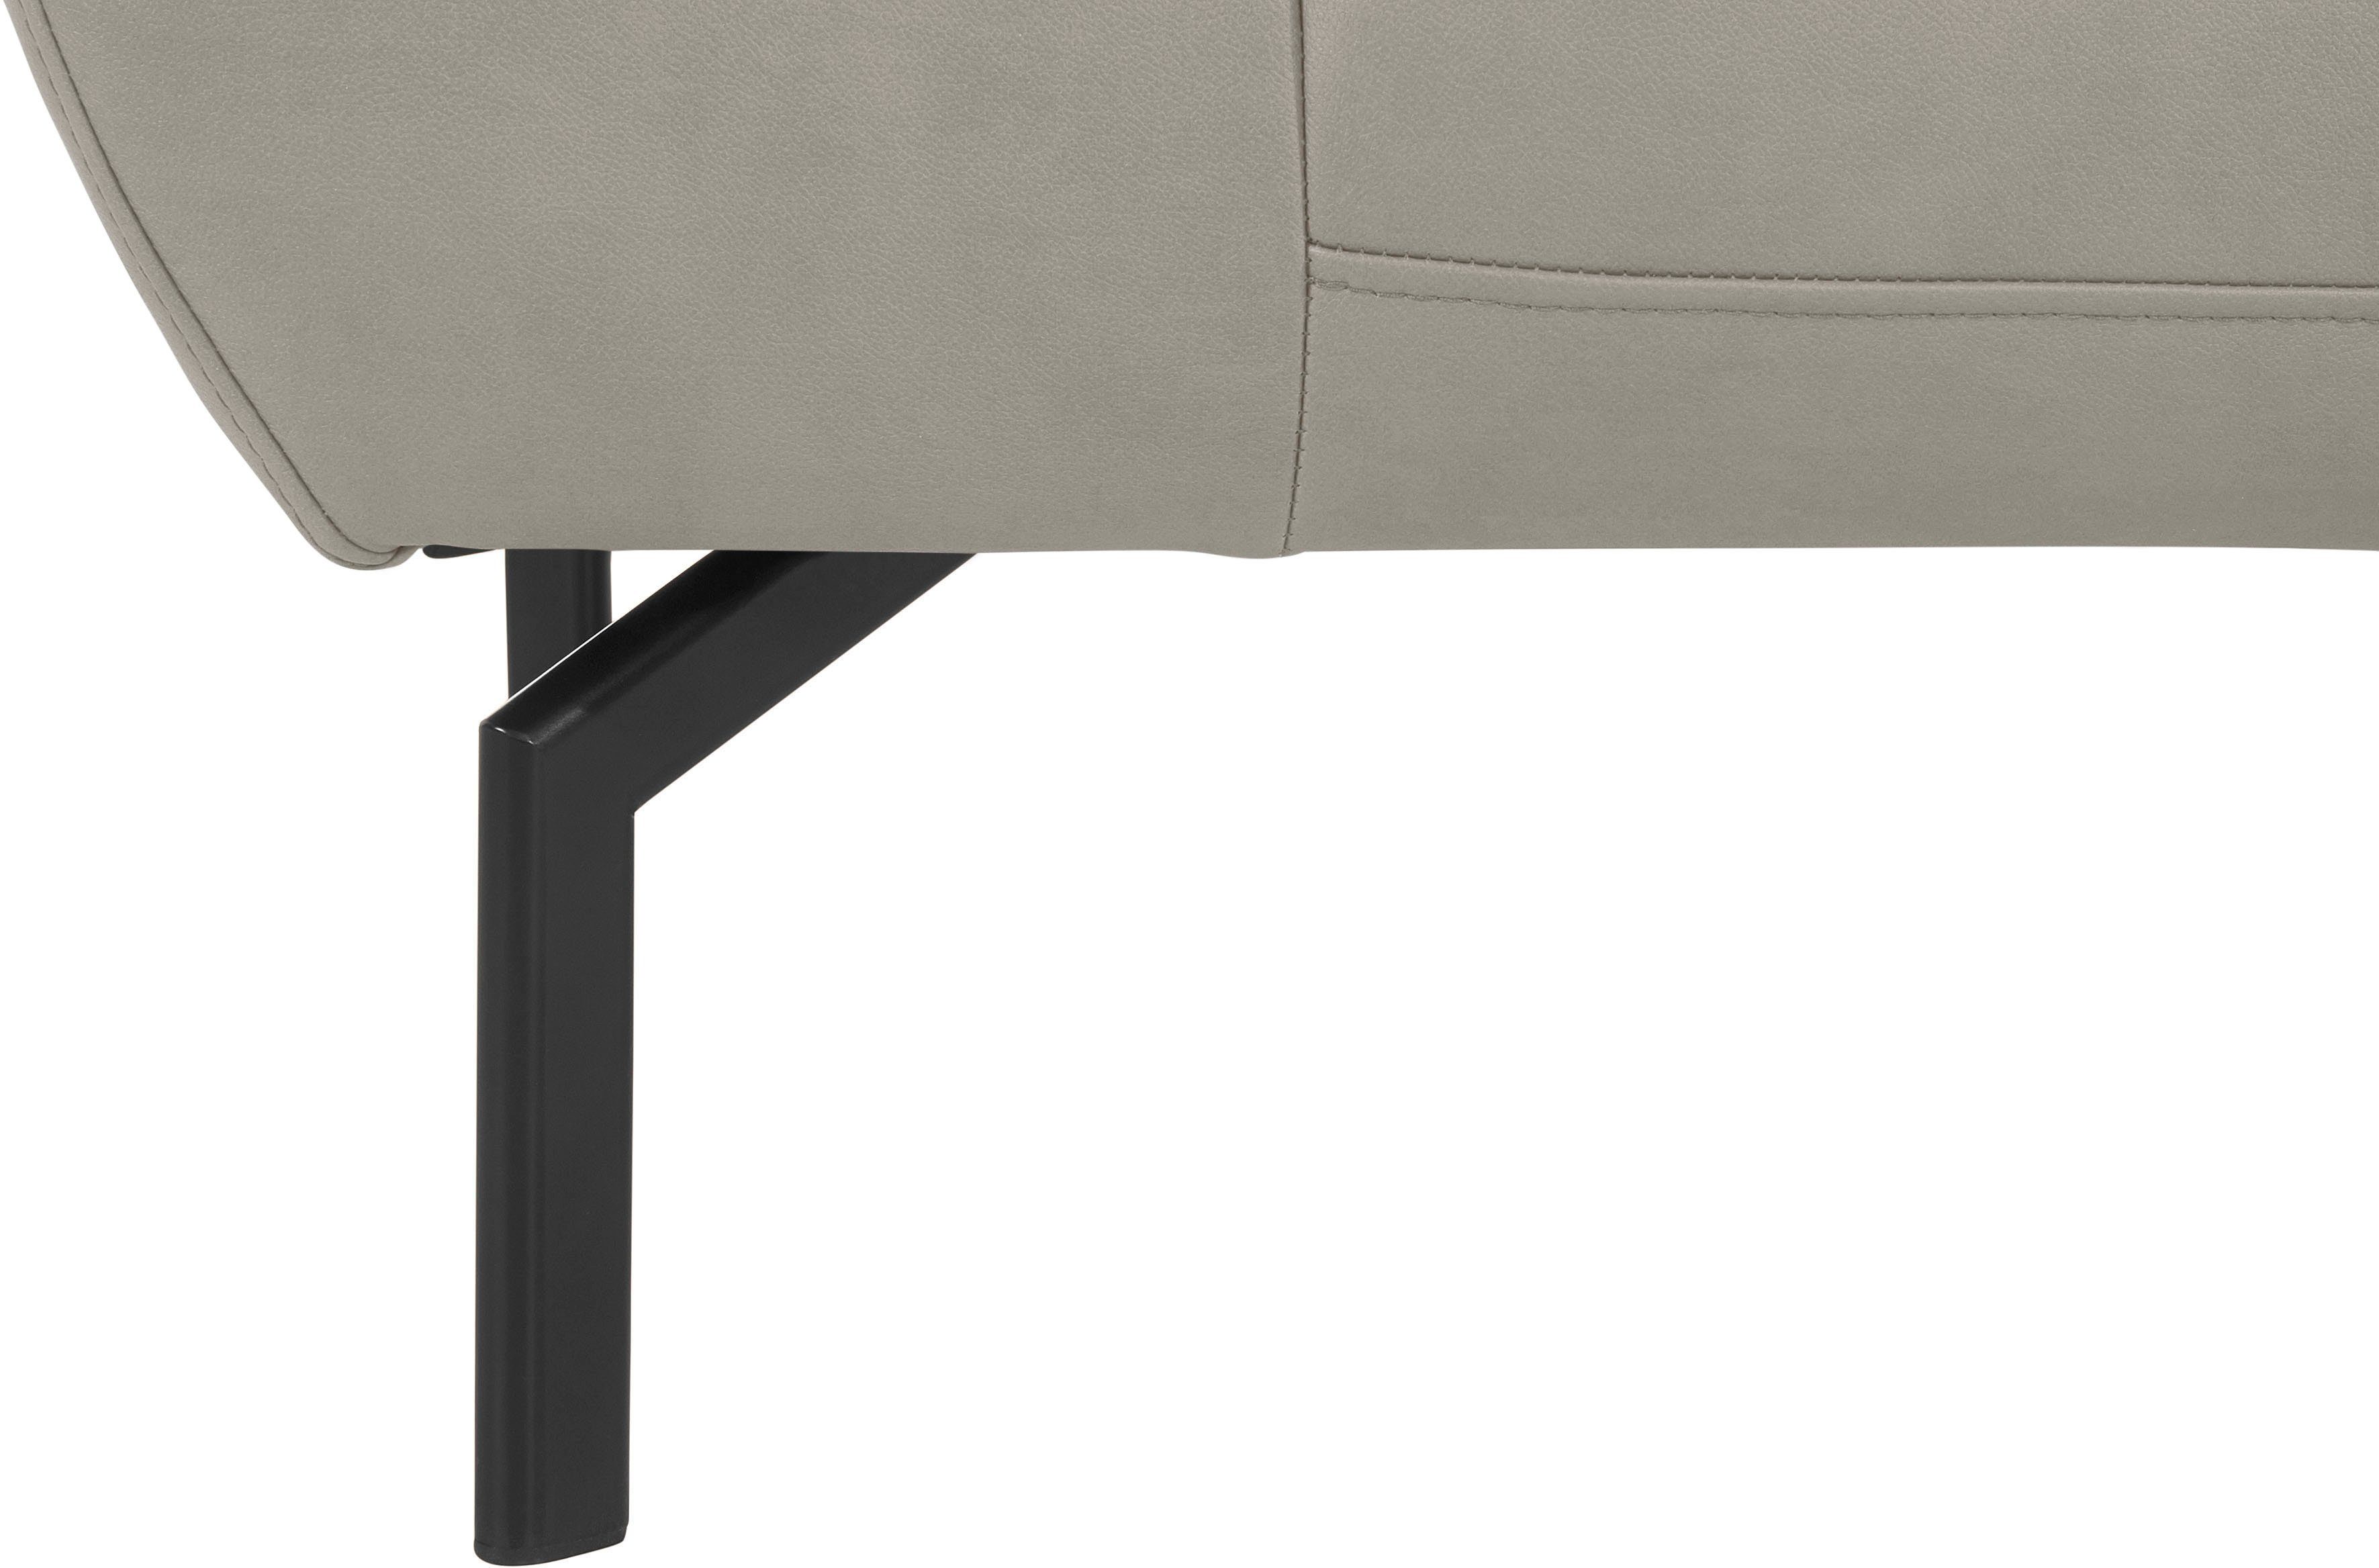 mit wahlweise Trapino of Luxus, Lederoptik Rückenverstellung, 2-Sitzer Style in Luxus-Microfaser Places